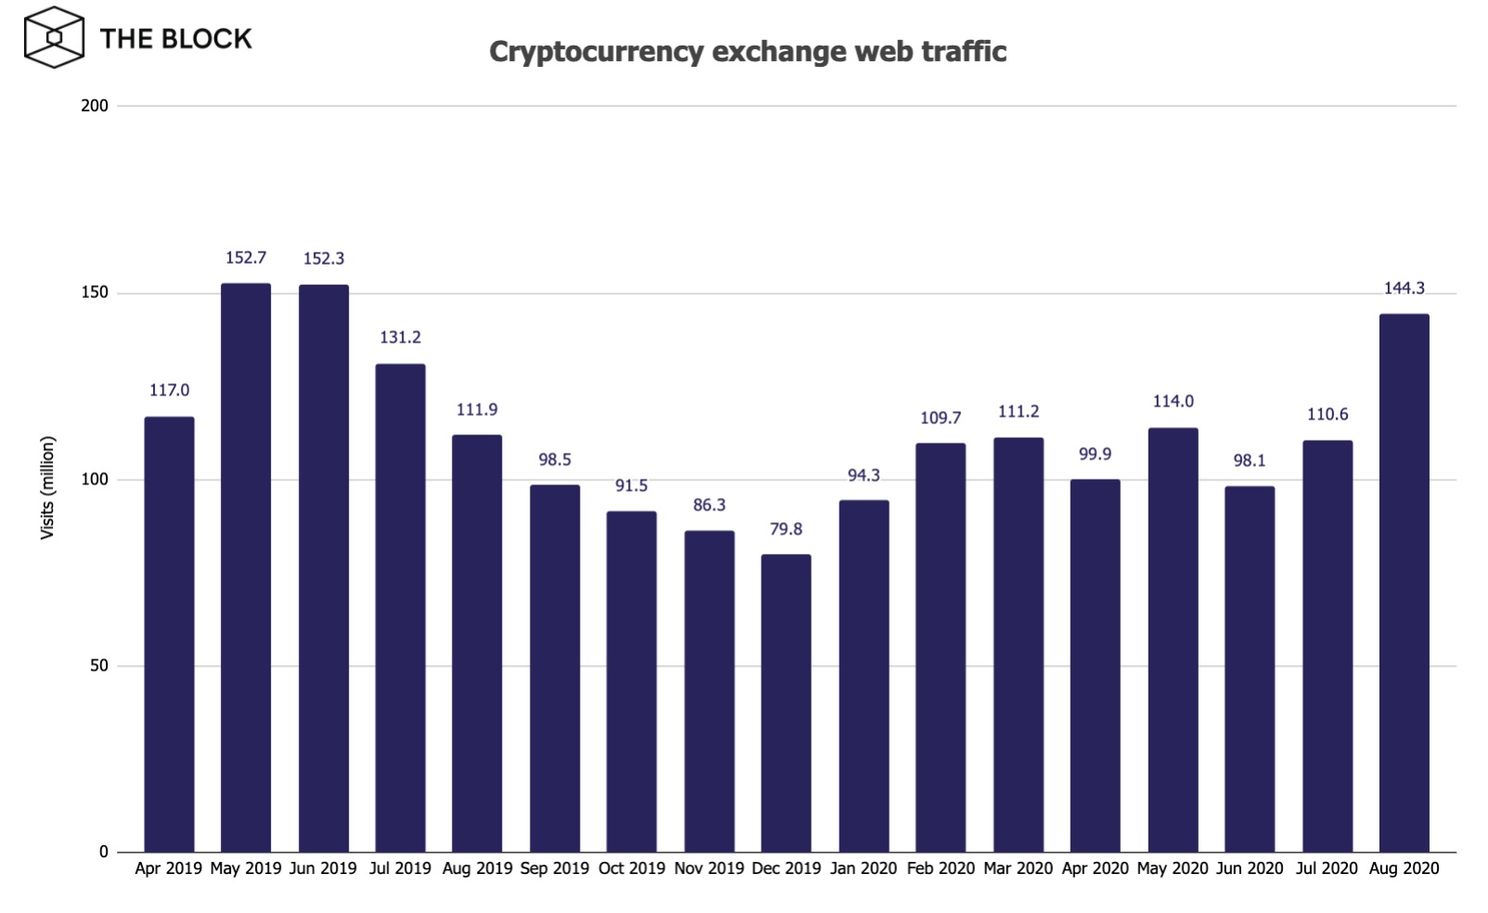 Bitcoin beurzen zien traffic 30% stijgen in augustus, record in 14 maanden